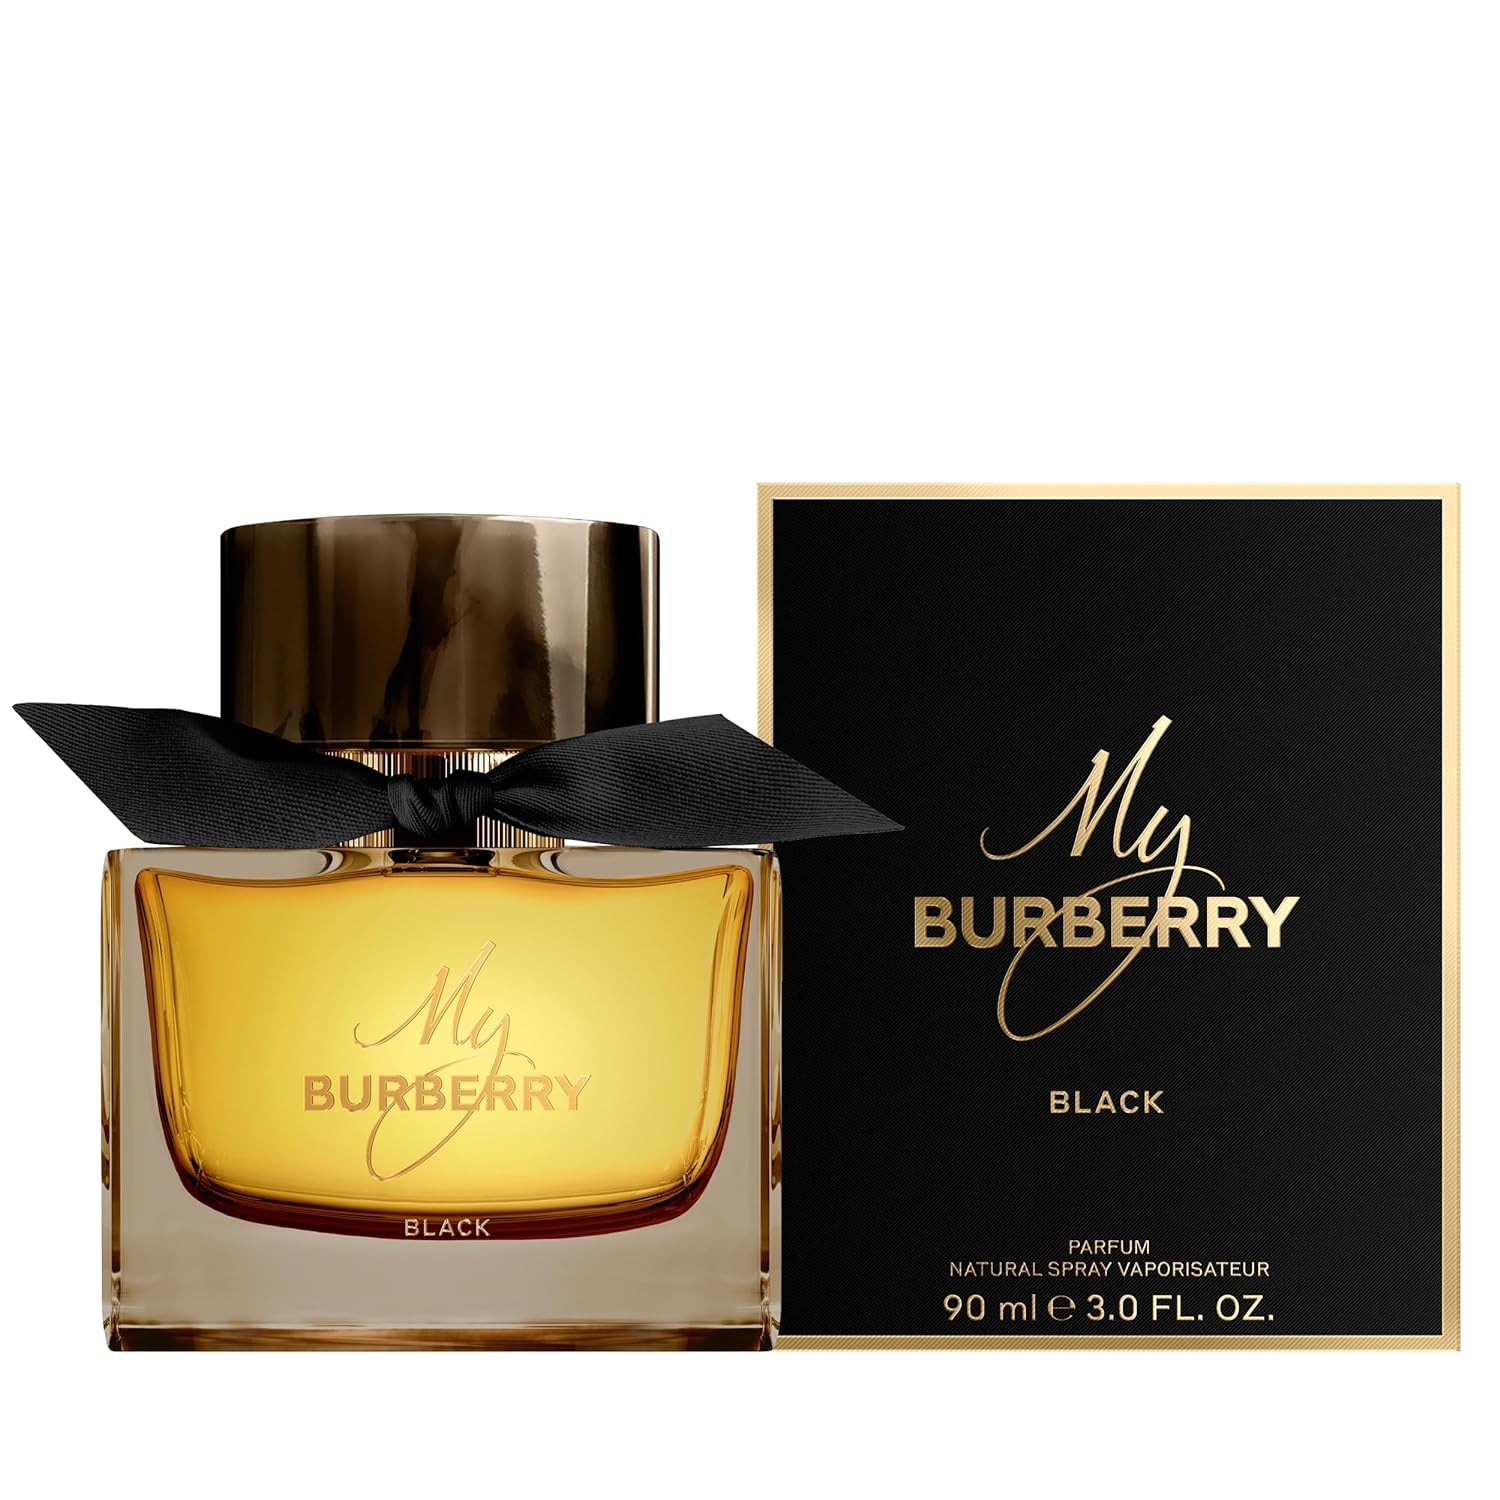 Burberry My Burberry Black Eau de Parfum Spray 90 ml for Women